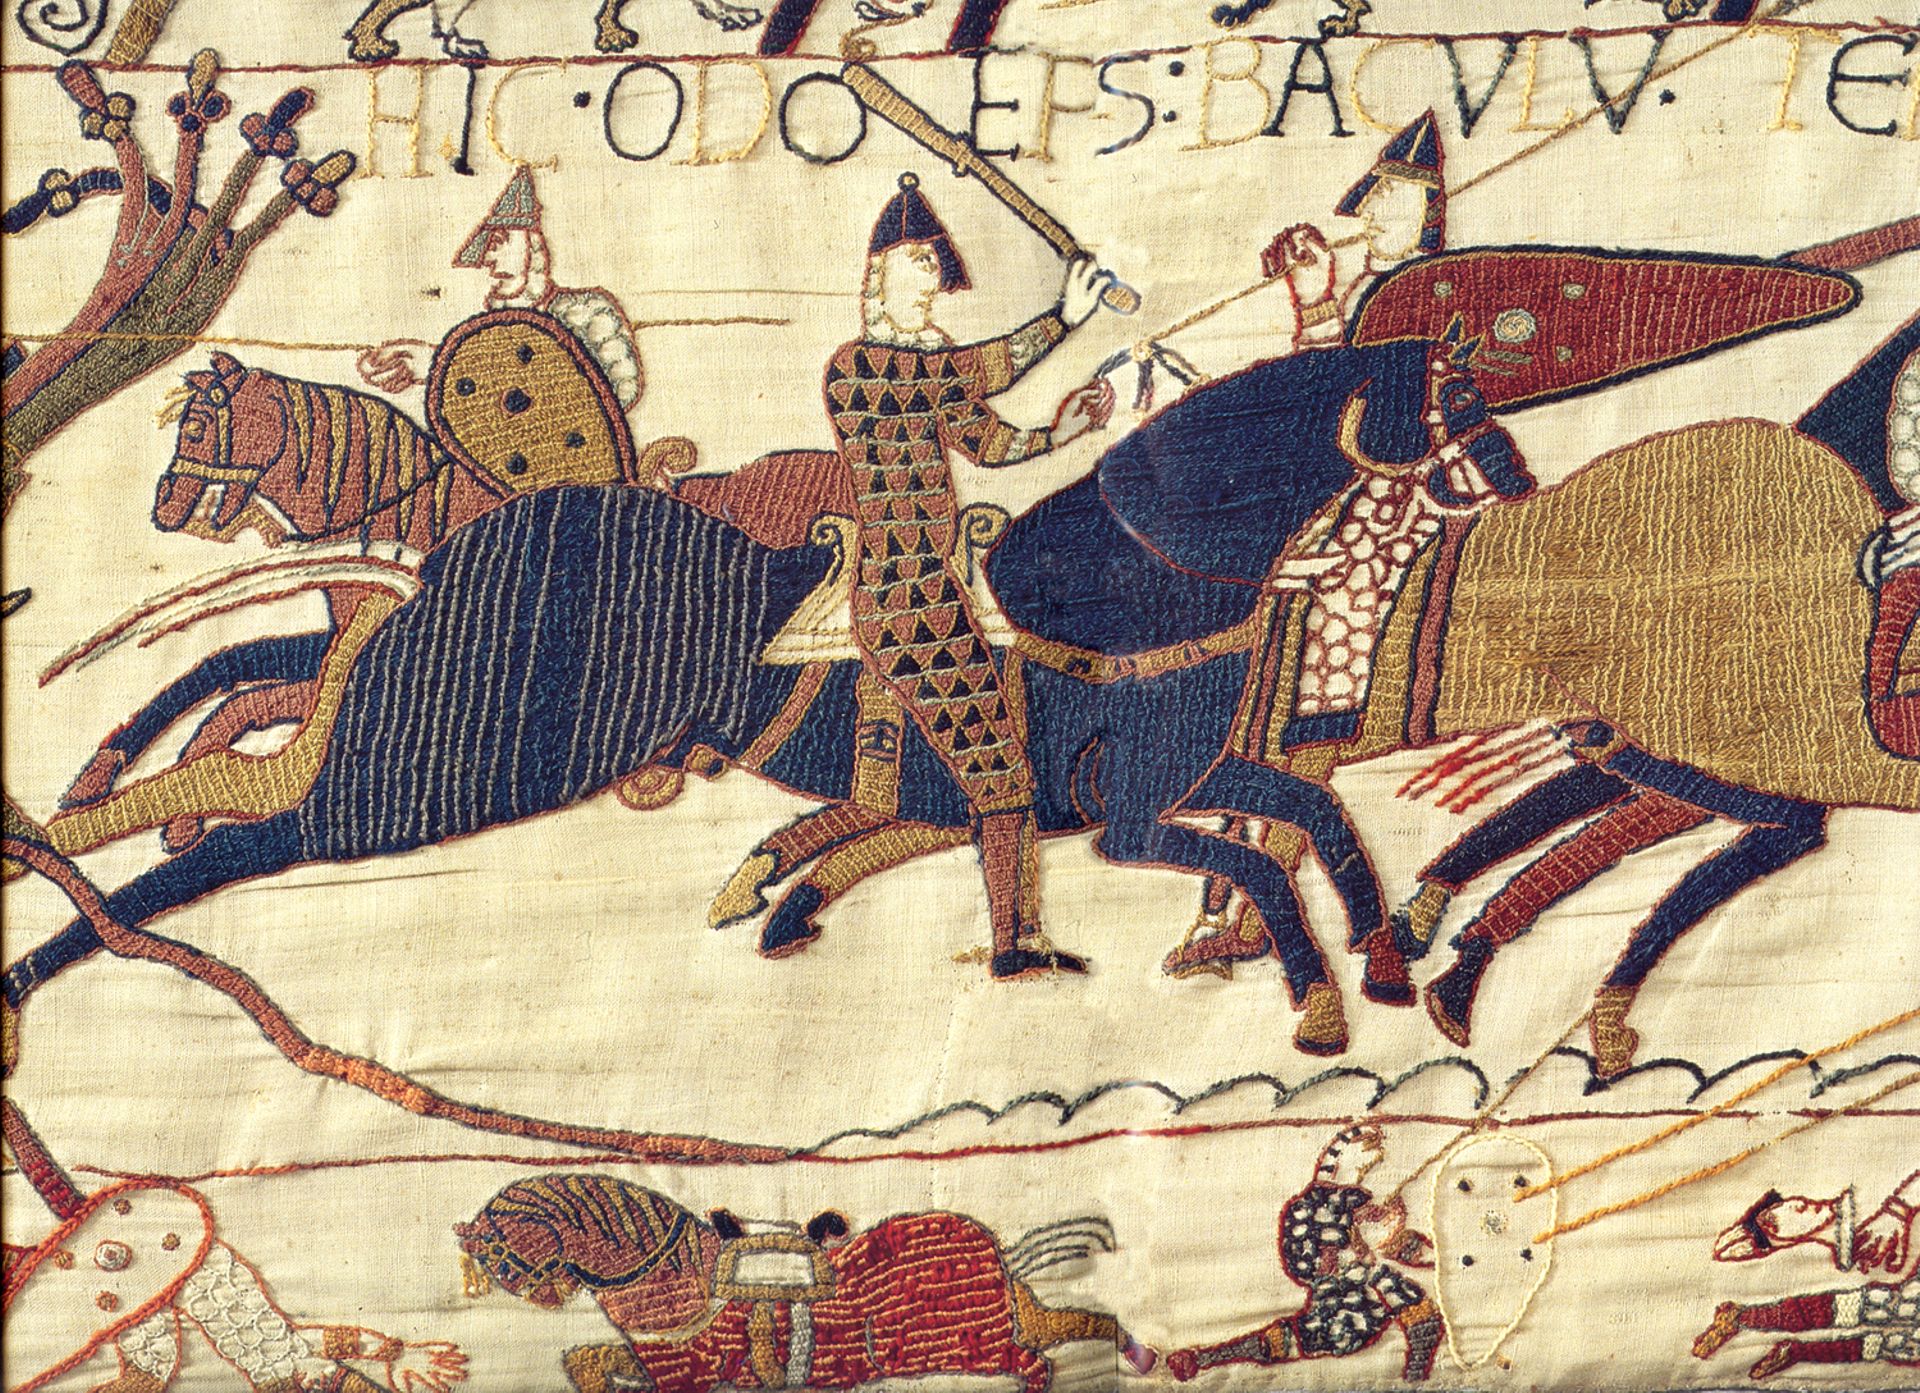 Odon sur son cheval noir lors de la bataille de Hastings. Il ne porte pas d’arme mortelle, puisqu’il est ecclésiastique et ne peut donc en théorie pas tuer.